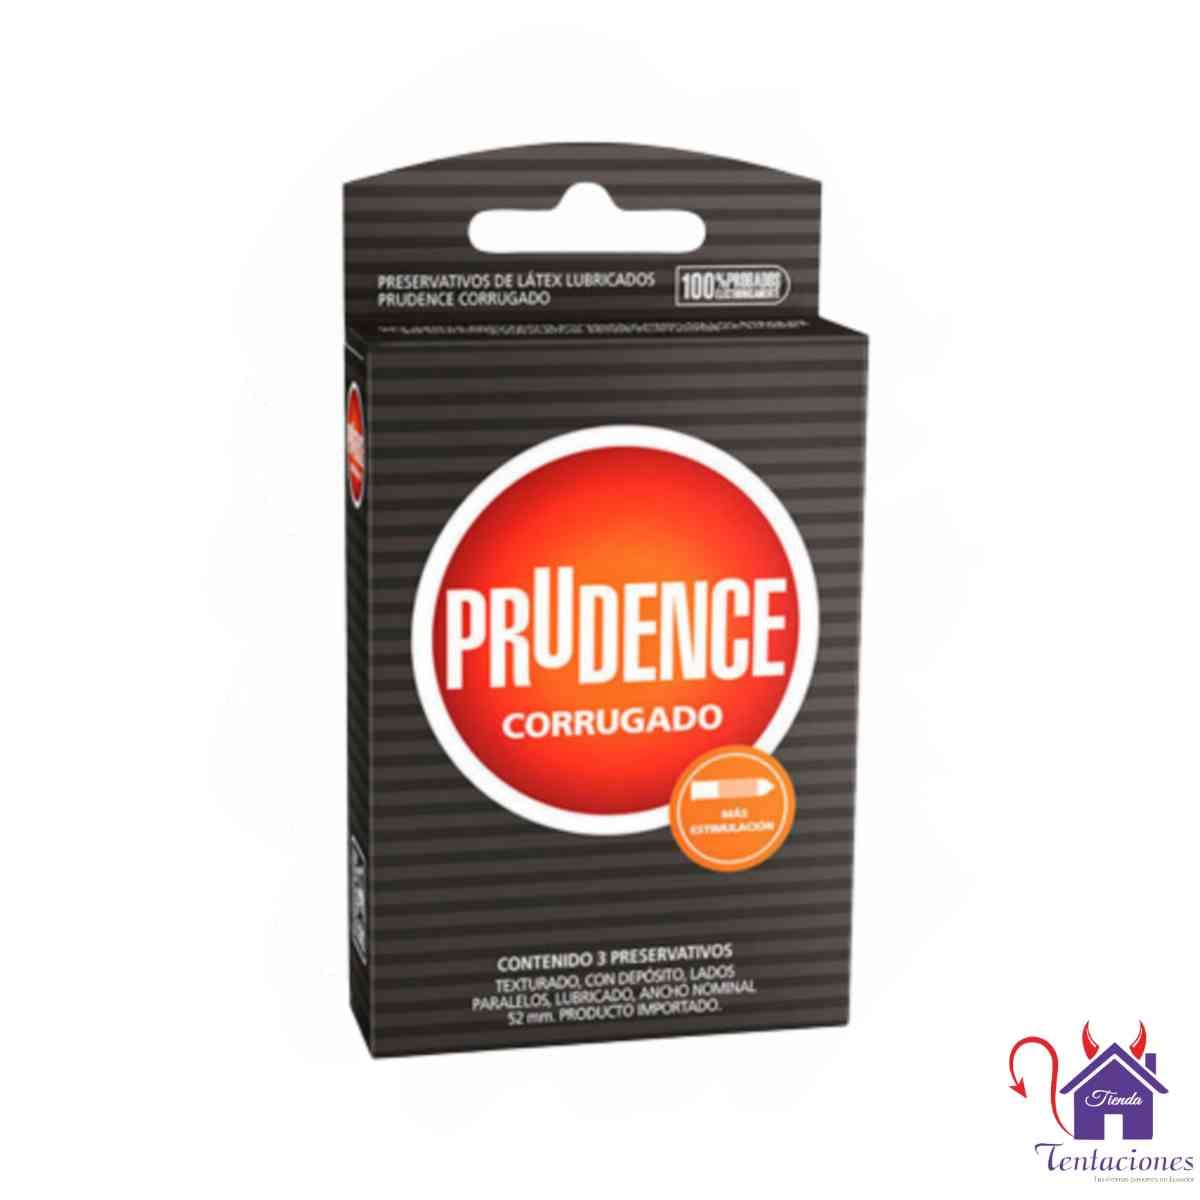 Condones Prudence Corrugado- Tienda Tentaciones-Sex Shop